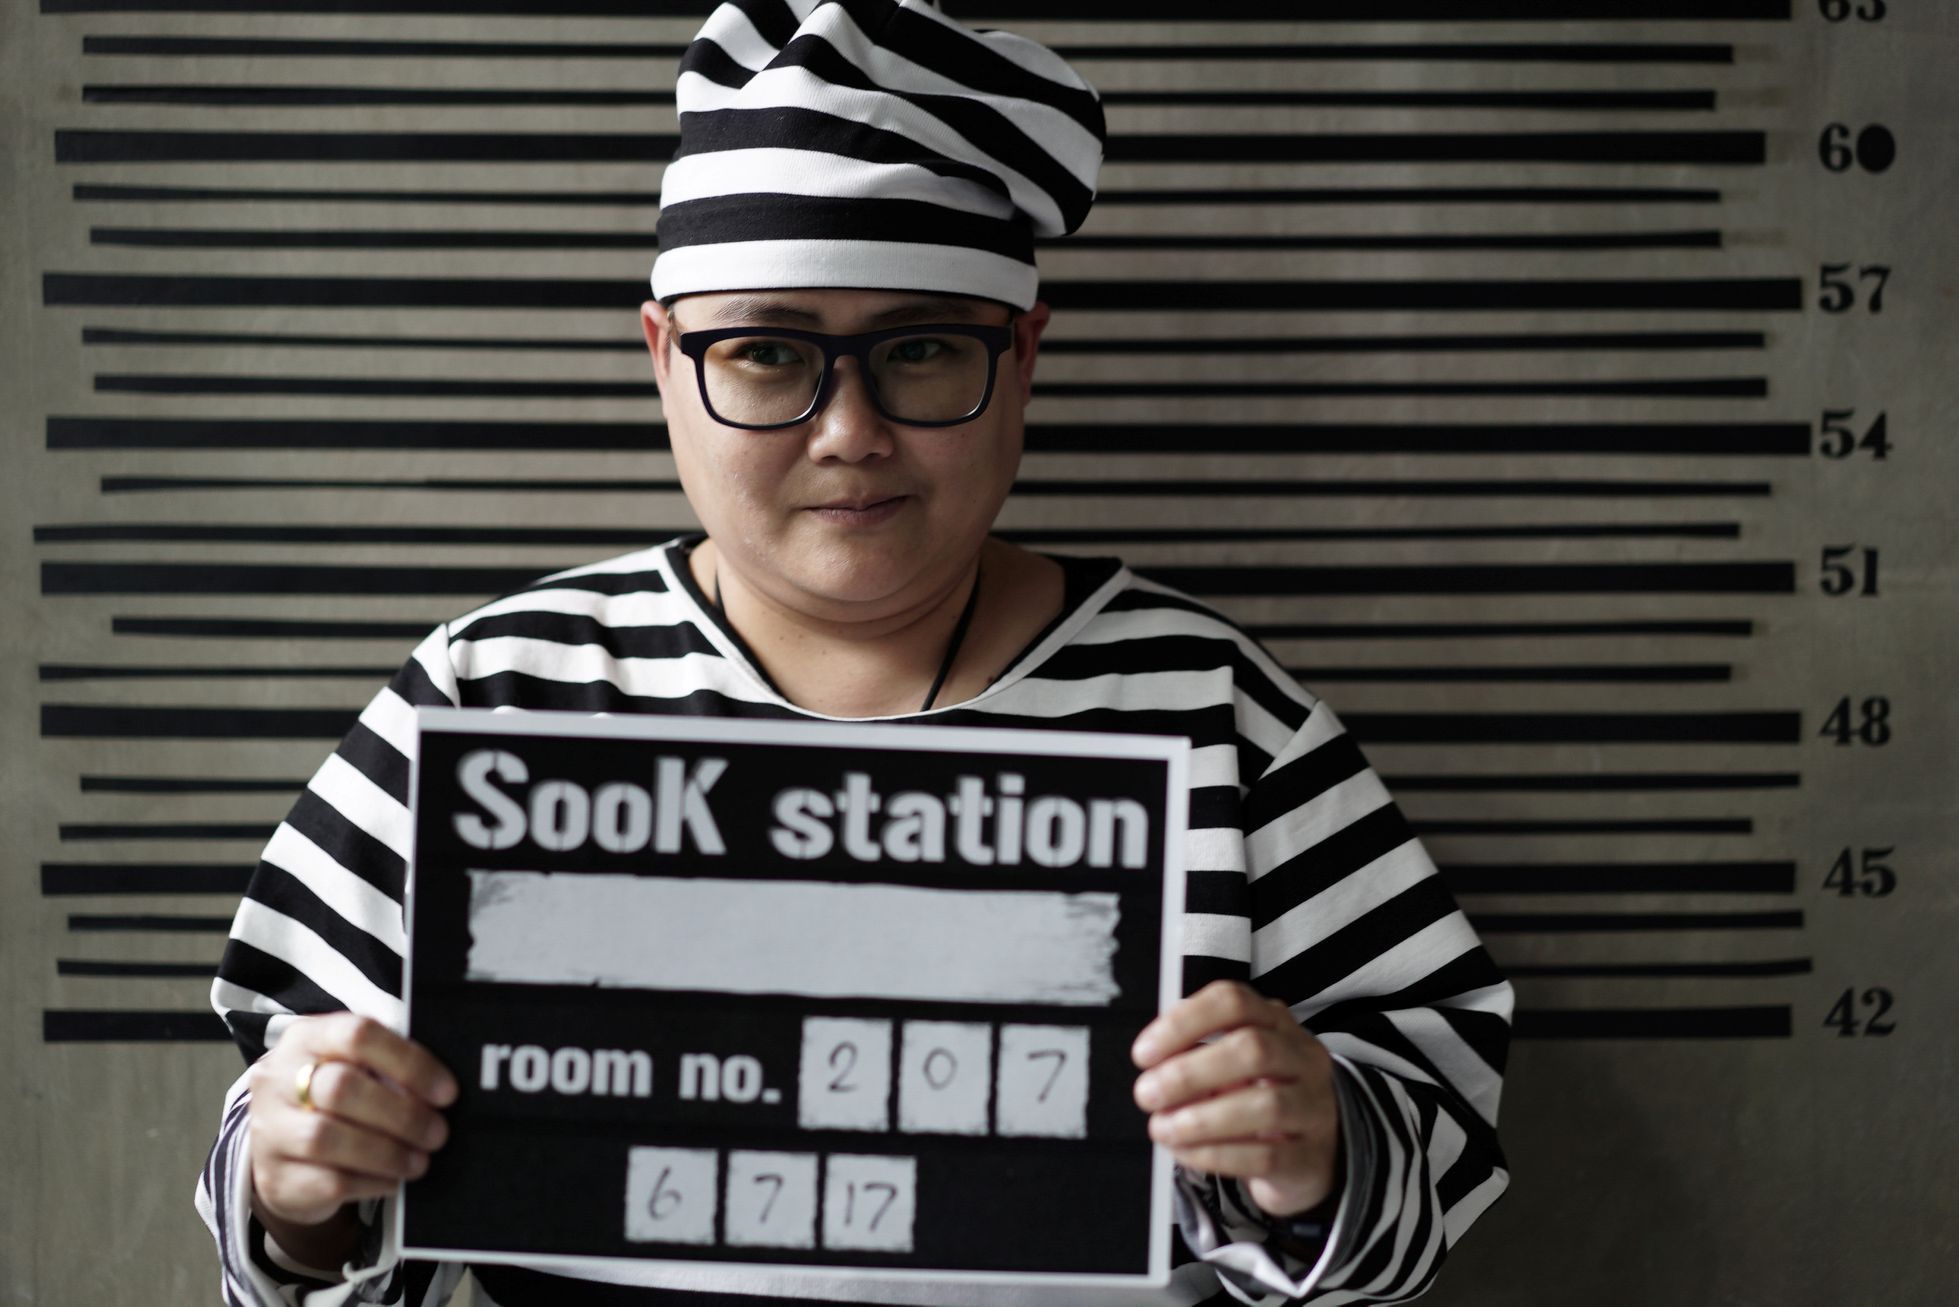 Hostel v Bangkoku láká hosty na nevšední zážitek: vypadá to v něm jako v thajském vězení